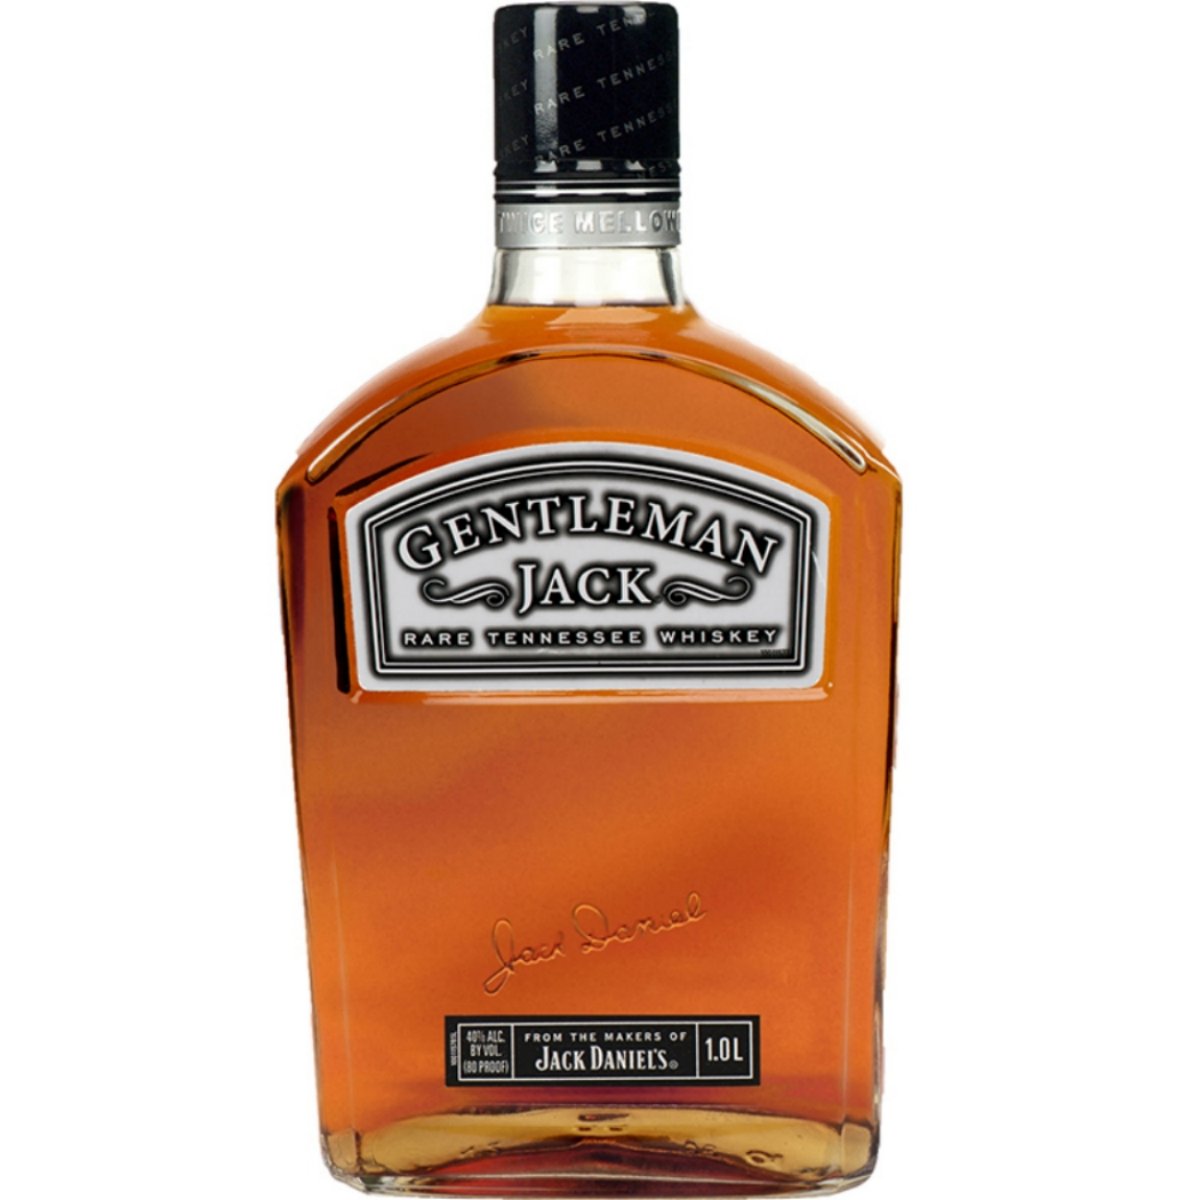 Jack Daniels Gentleman Jack 75cl